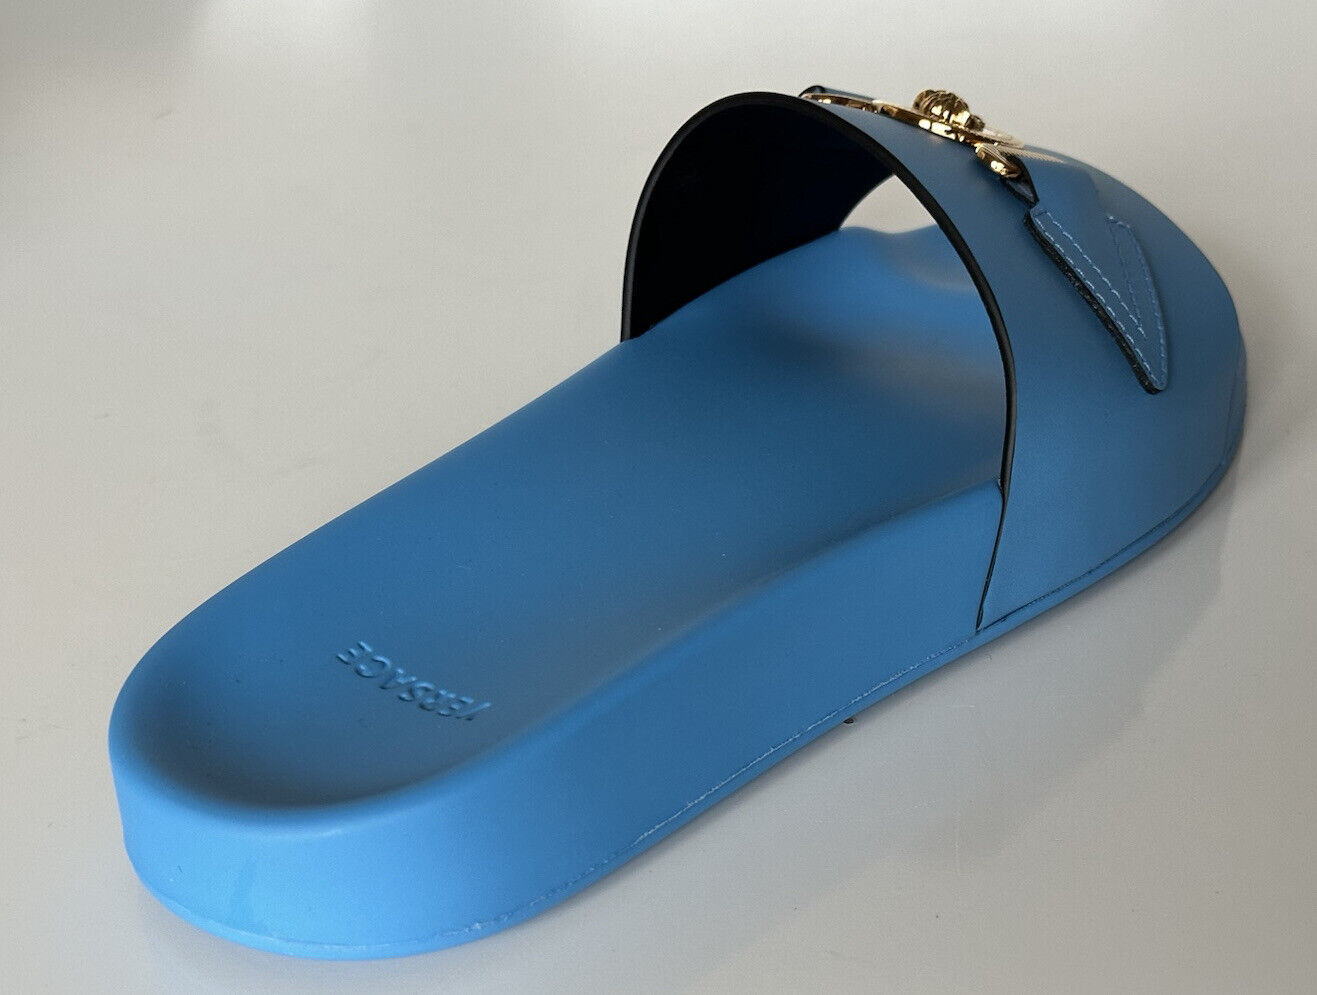 NIB $575 Versace Gold Medusa Leather/Rubber Sandals Blue 11.5 (44.5) 1004983 IT